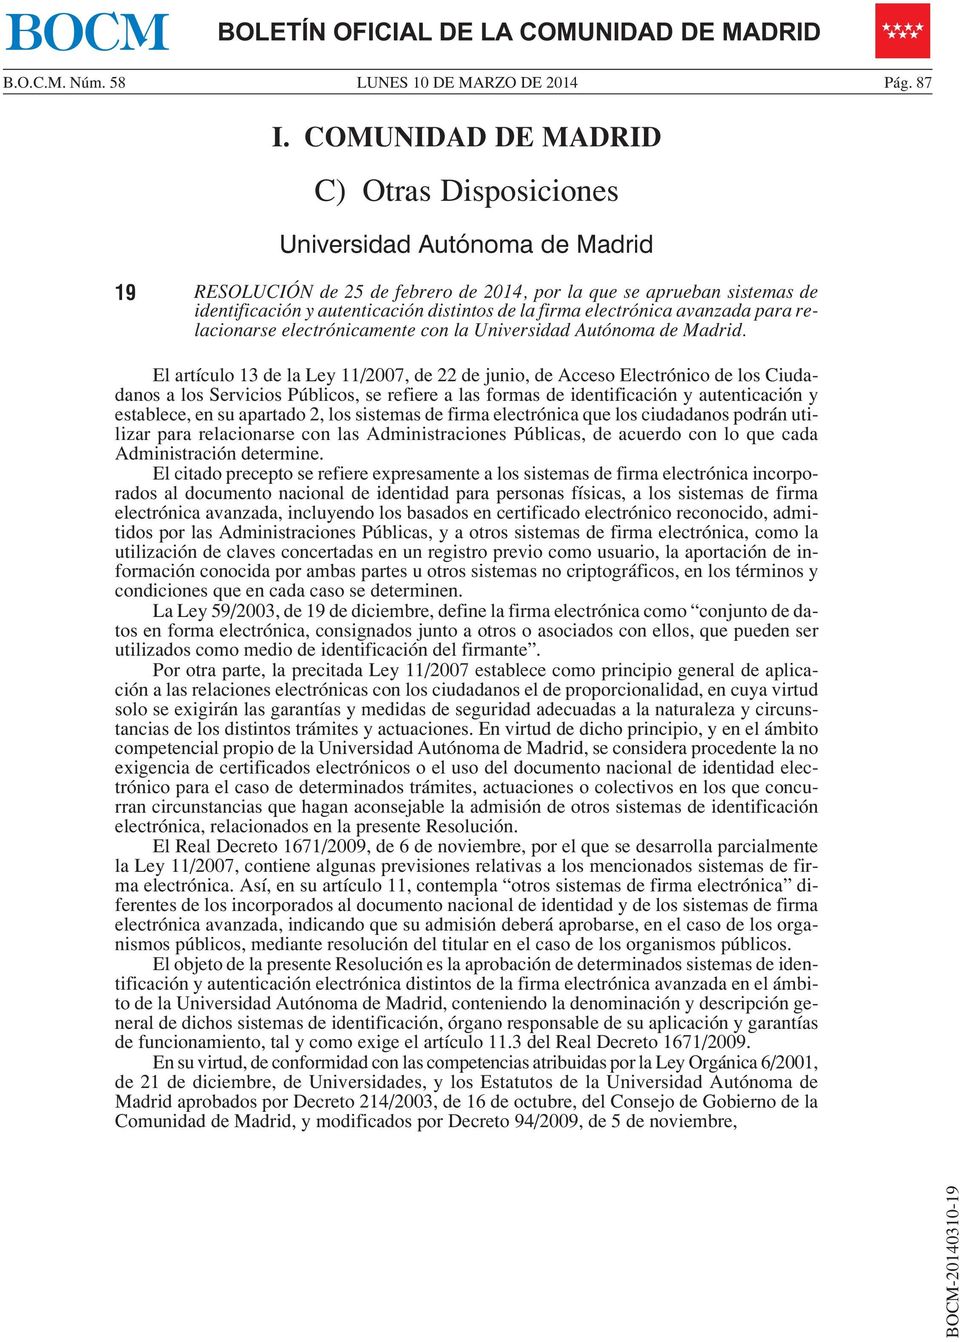 firma electrónica avanzada para relacionarse electrónicamente con la Universidad Autónoma de Madrid.